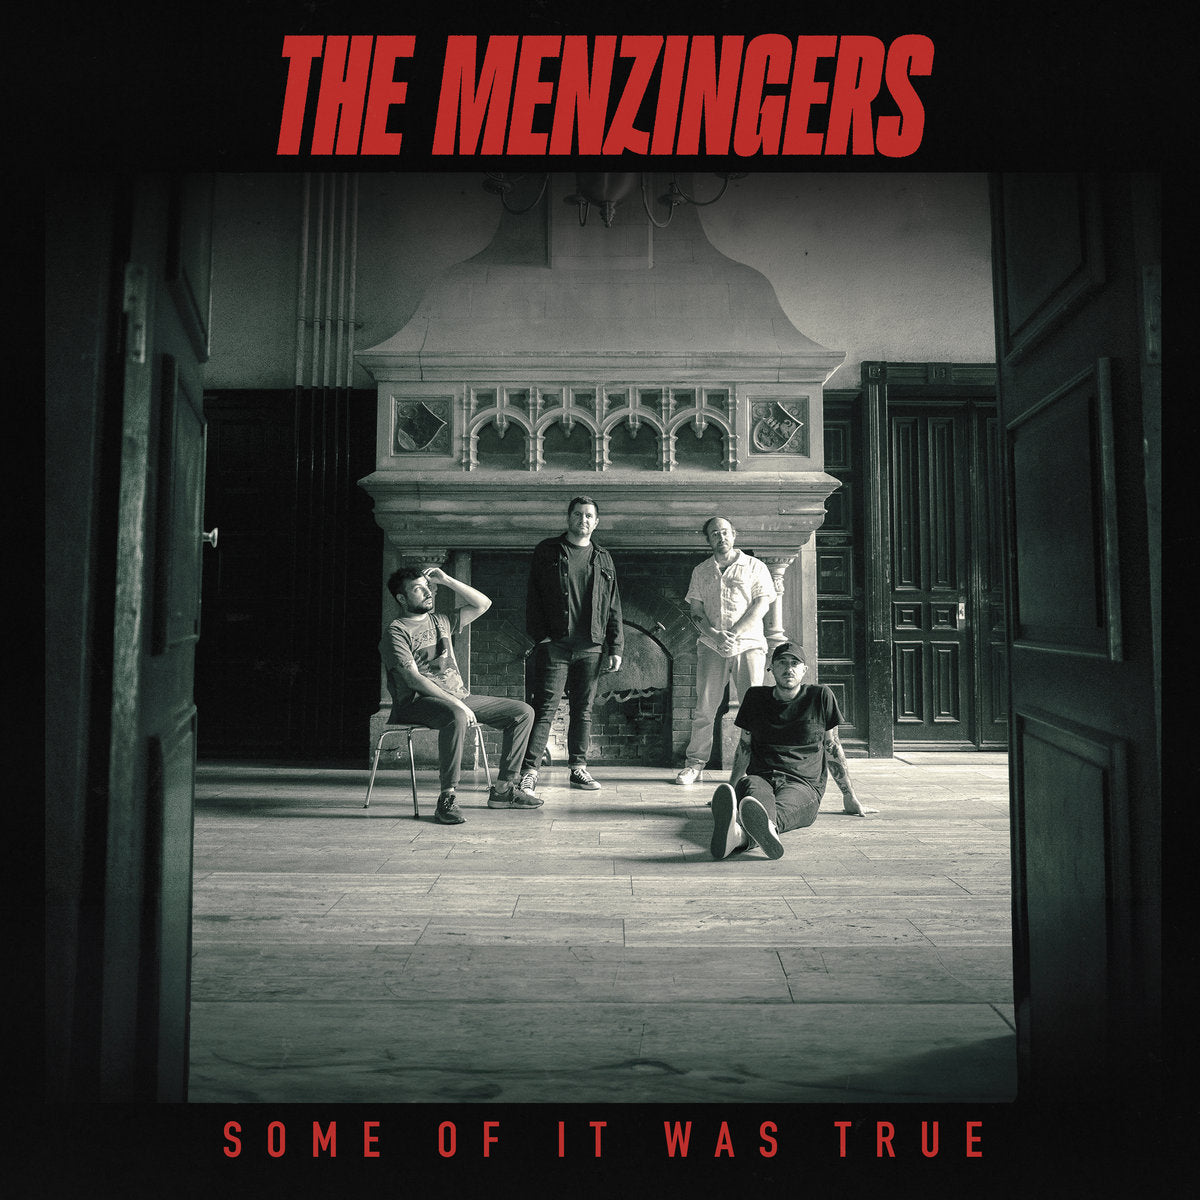 The Menzingers "Some Of It Was True" 12" Vinyl